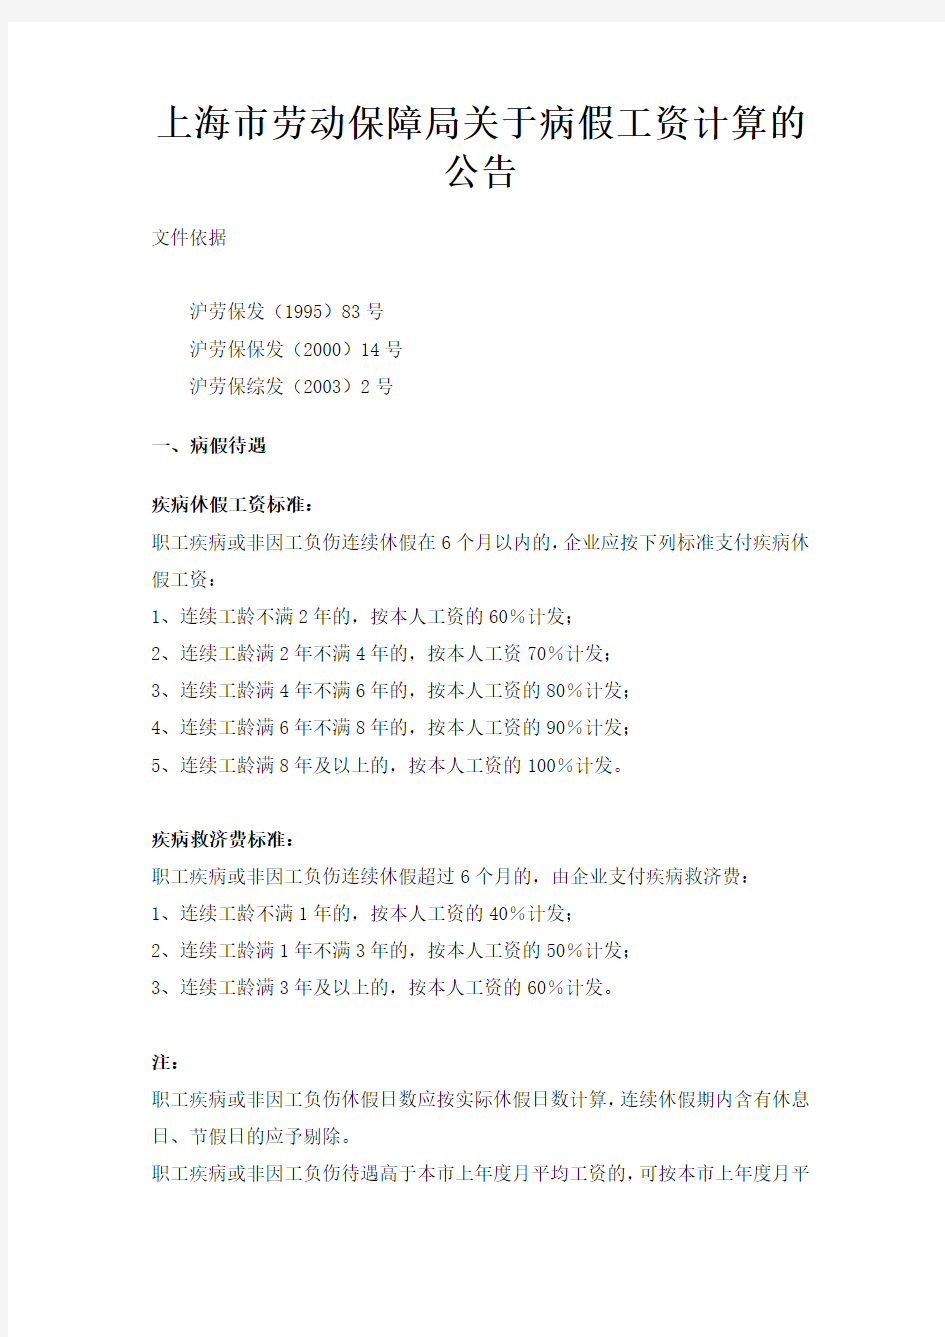 上海市劳动保障局关于病假工资计算的公告